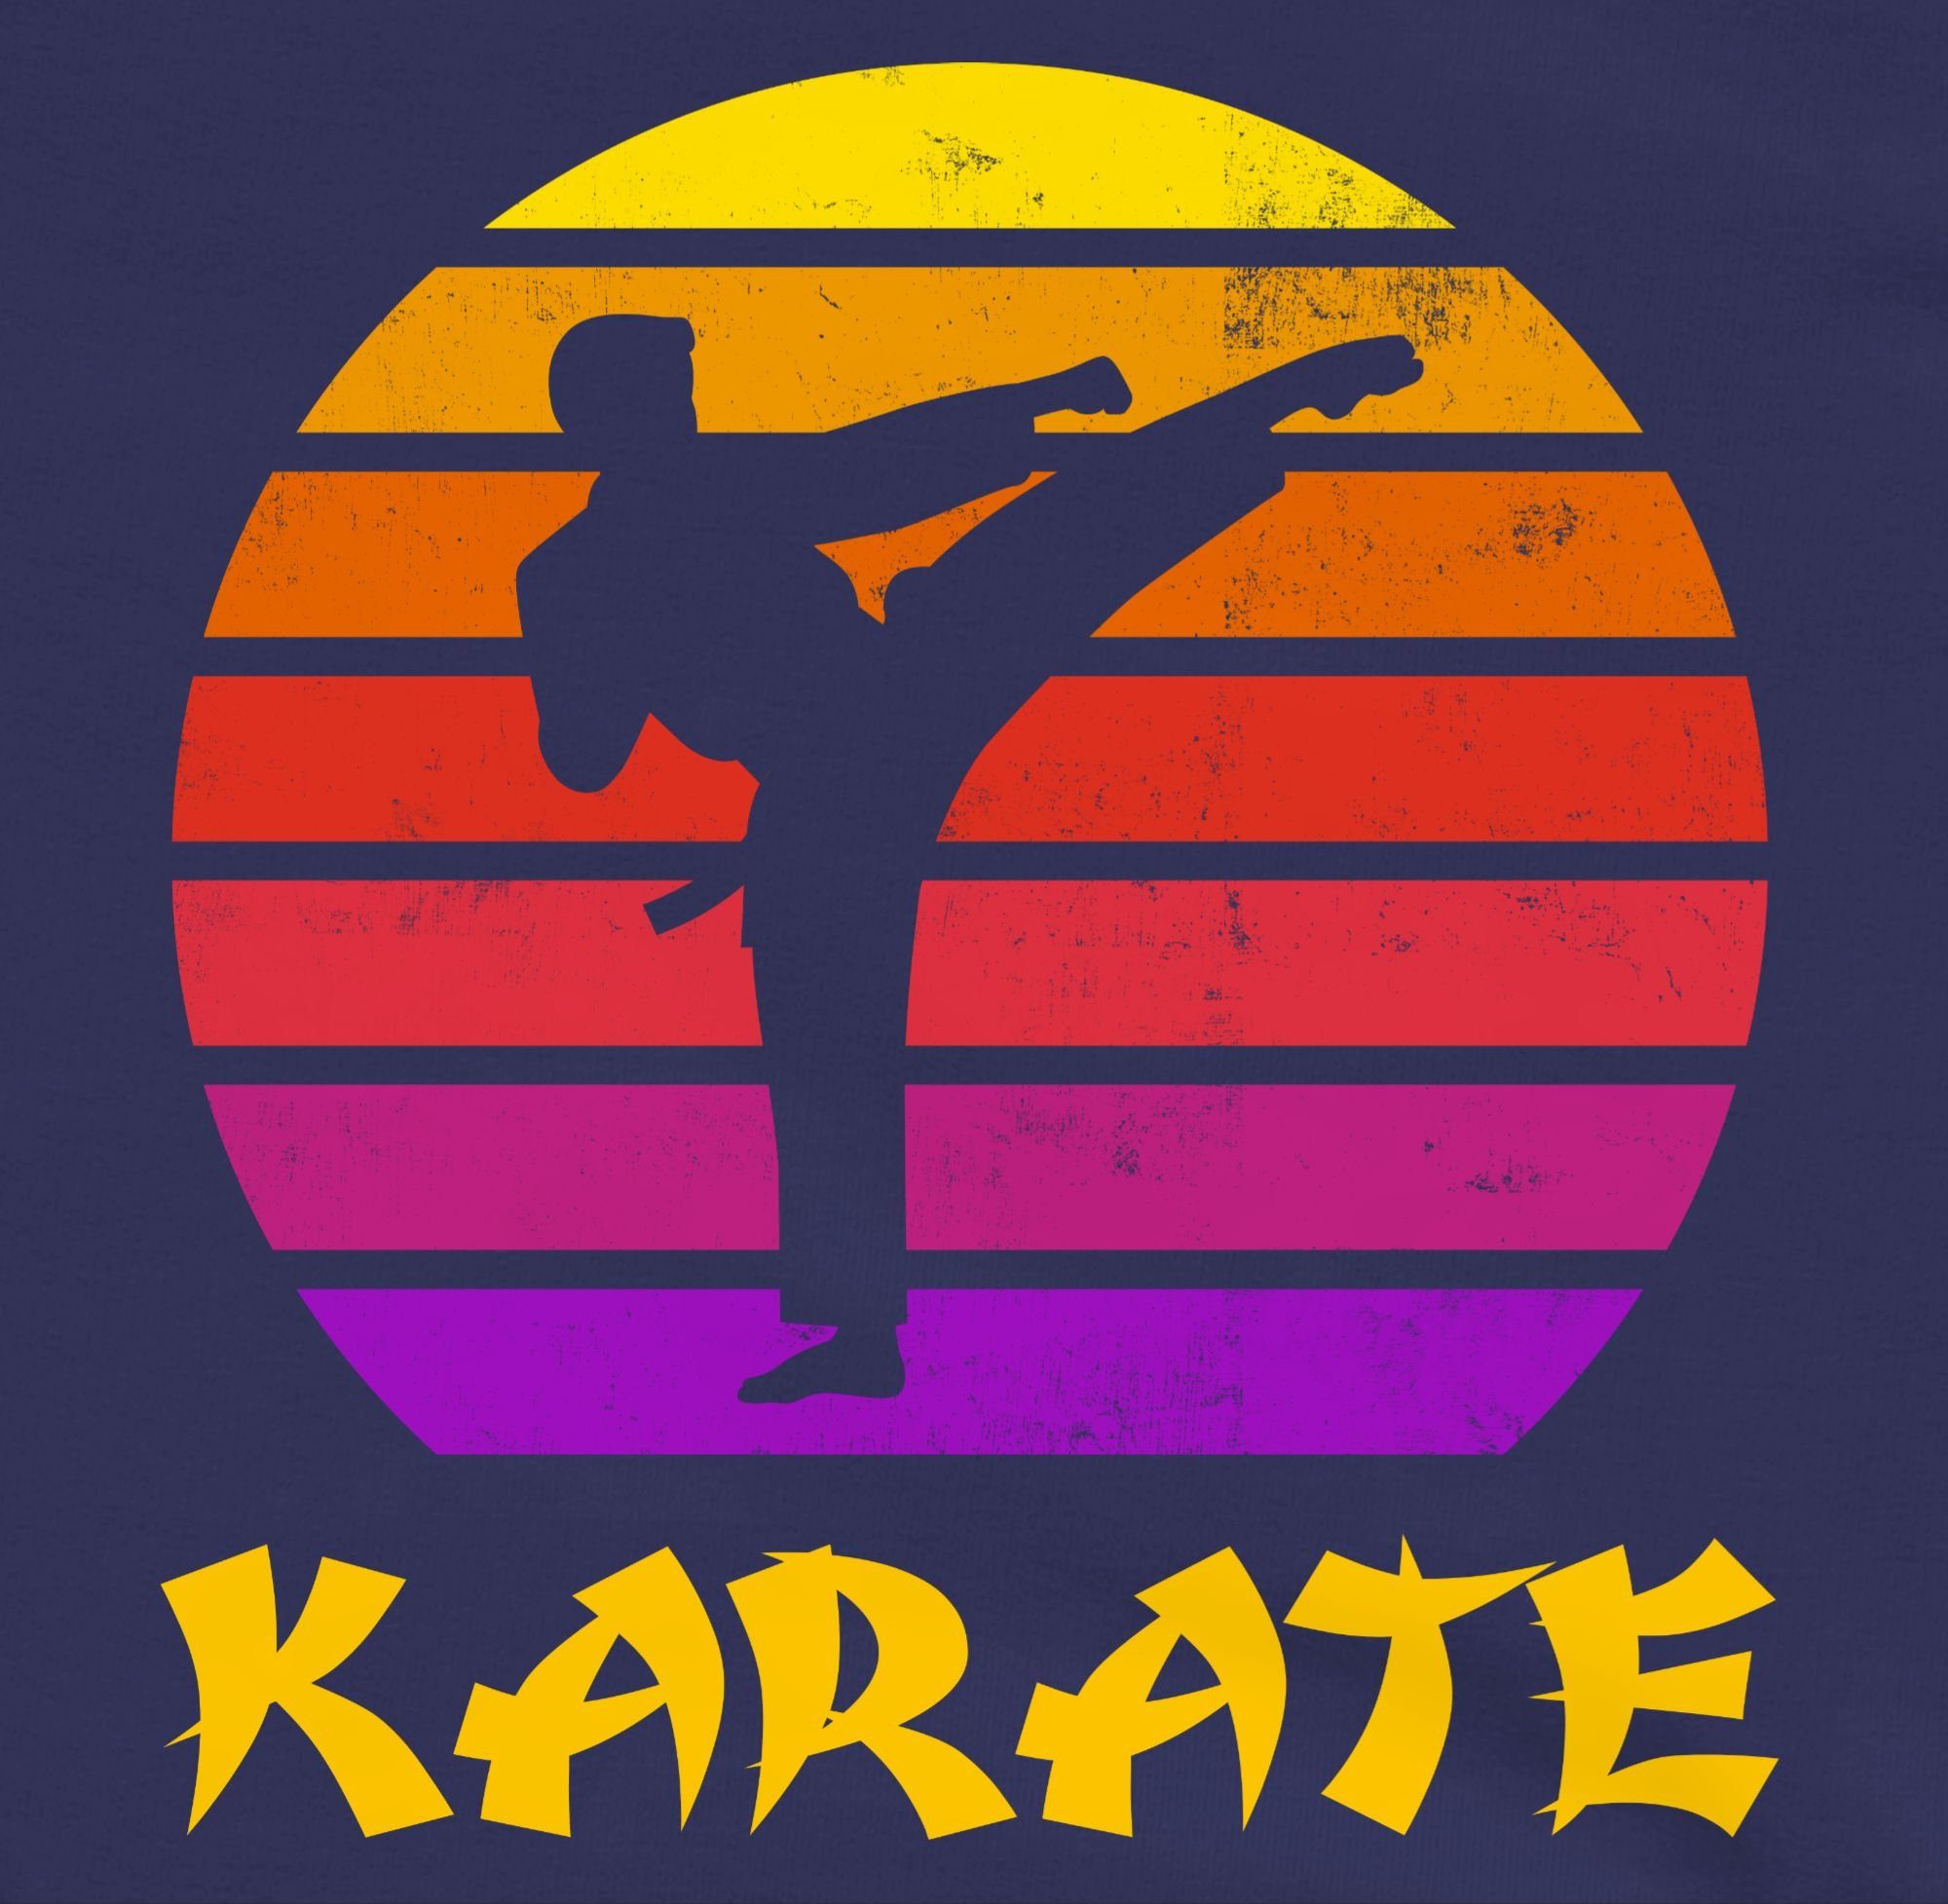 Karate Navy Shirtracer Blau Sonne 3 Sport Kleidung Retro Kinder Sweatshirt